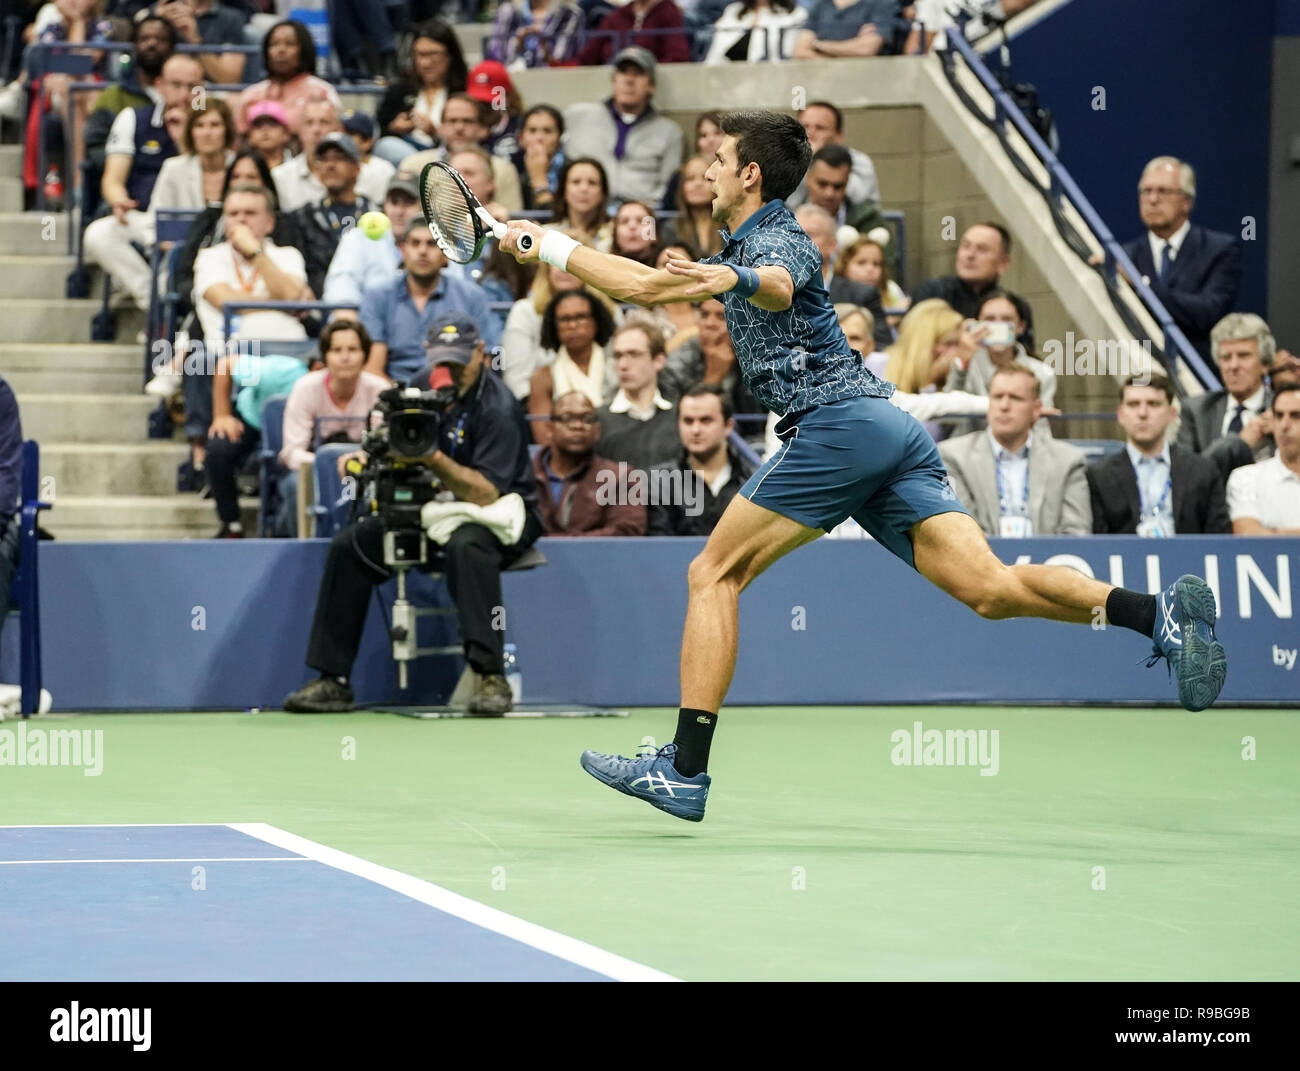 New York, NY - 9 septembre 2018 : Novak Djokovic de Serbie retourne au cours de balle finale unique des hommes de l'US Open 2018 contre Juan Martin del Potro l'Argentine à l'USTA Billie Jean King National Tennis Center Banque D'Images